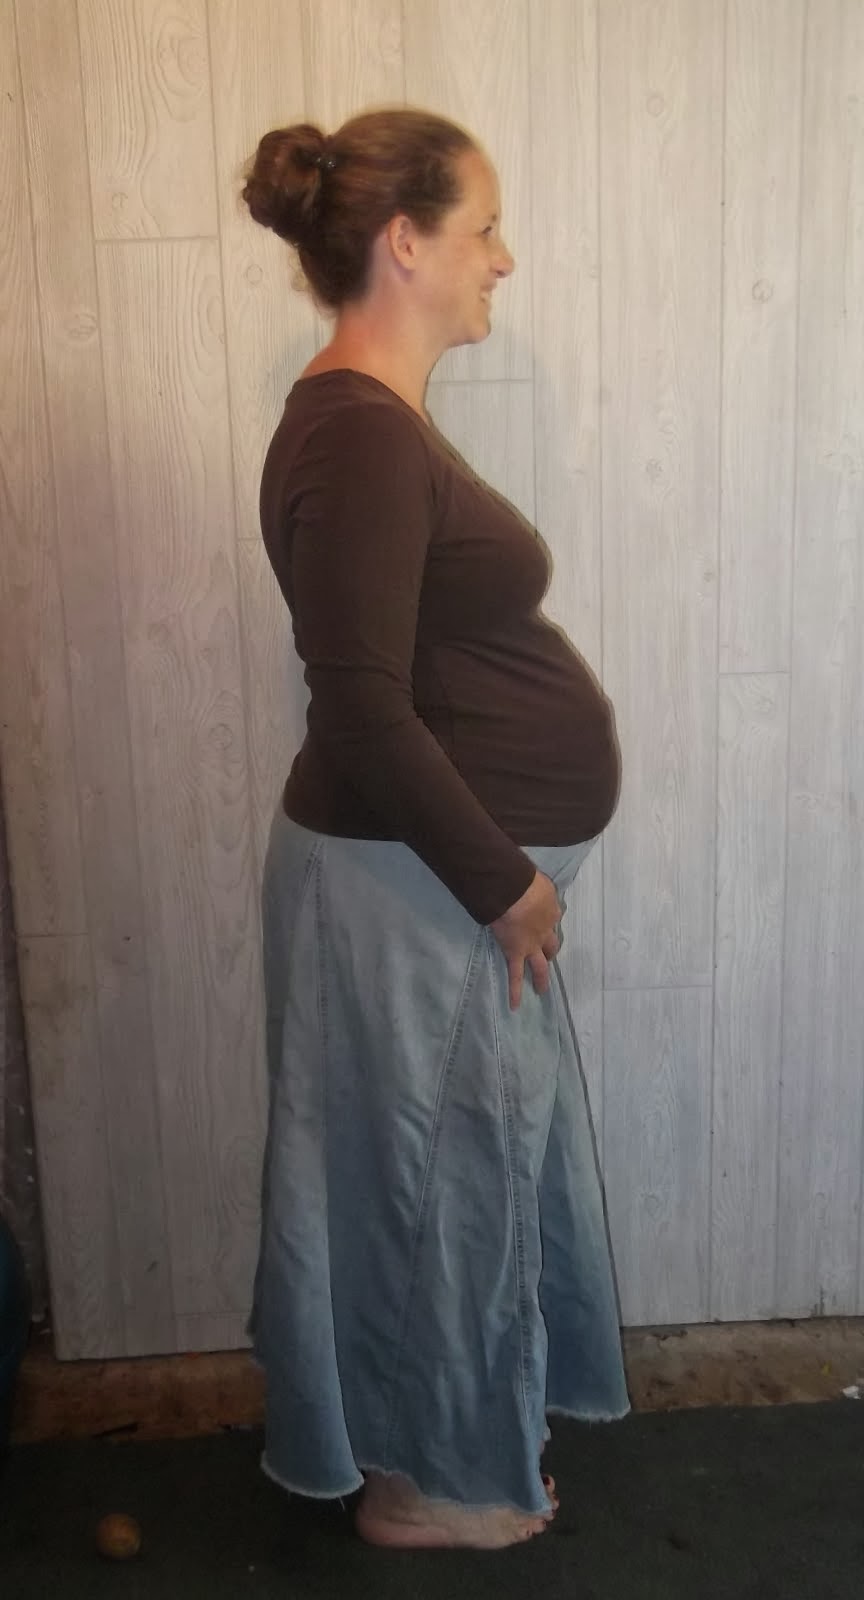 1 week postpartum (202)